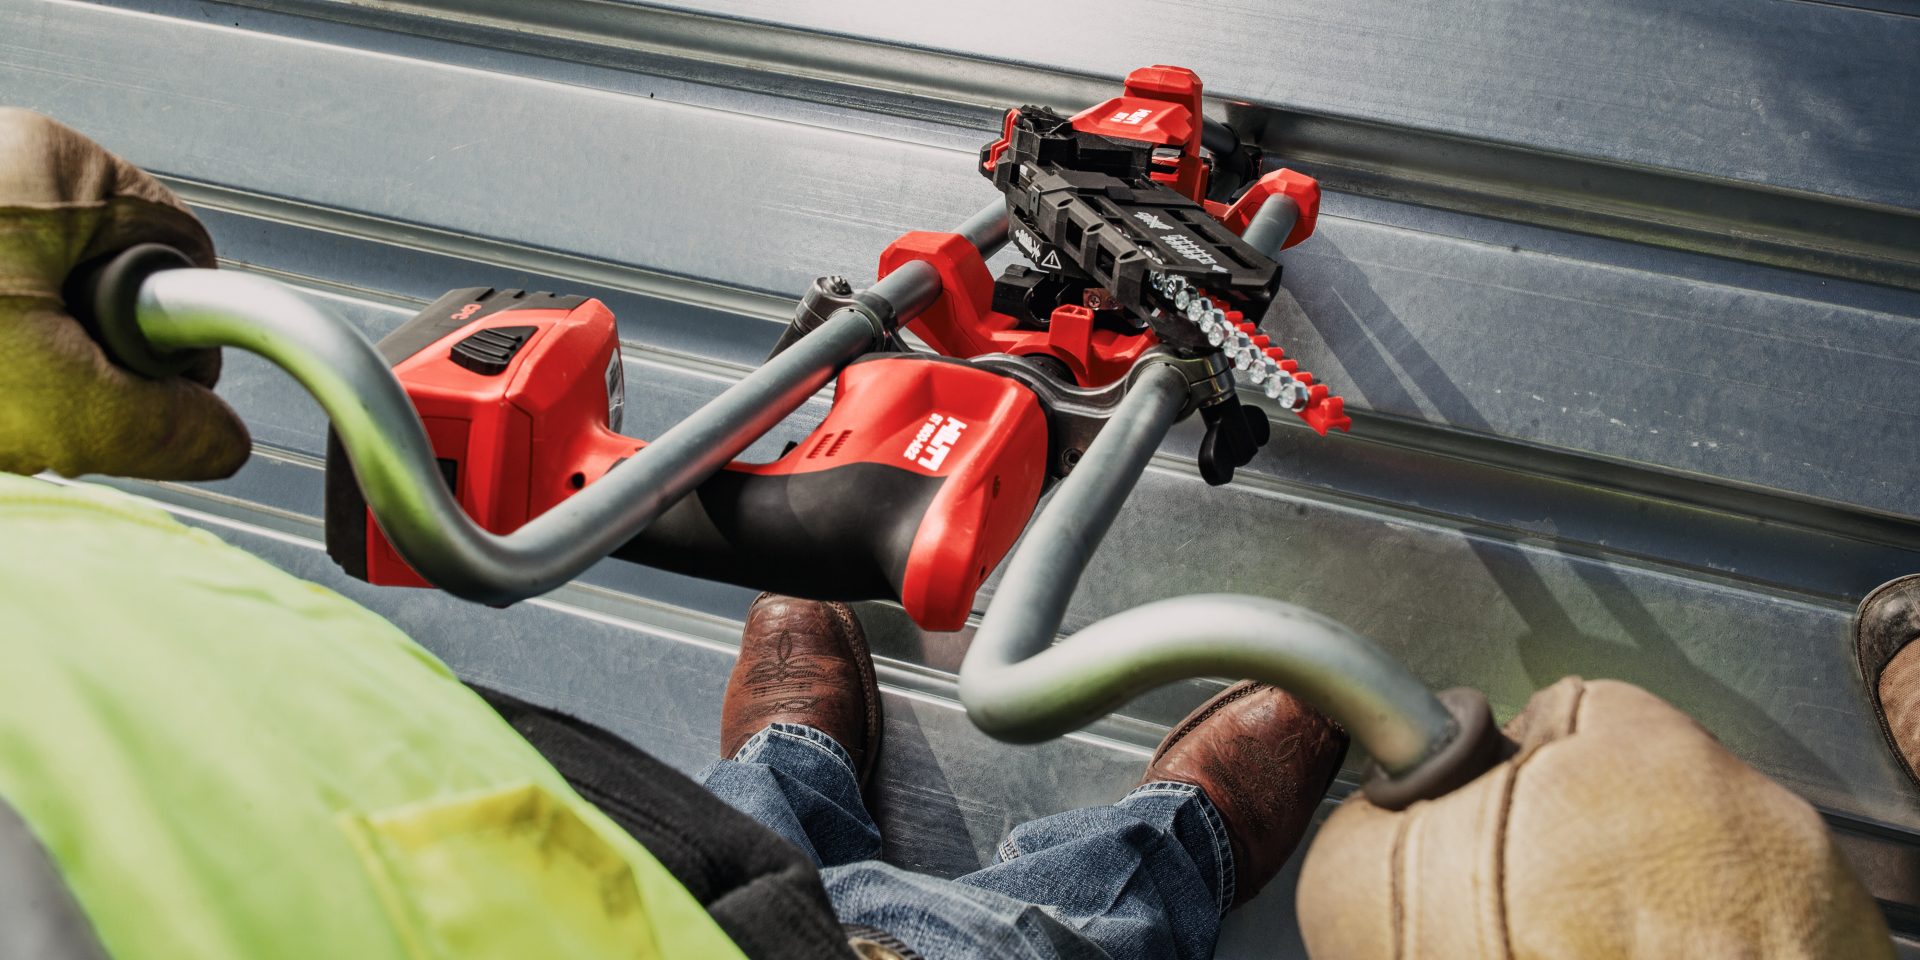 Pracovník na plechové střeše používá šroubový upevňovací systém Hilti (rukojeť SDT pro práci ve stoje) k upevnění opláštění